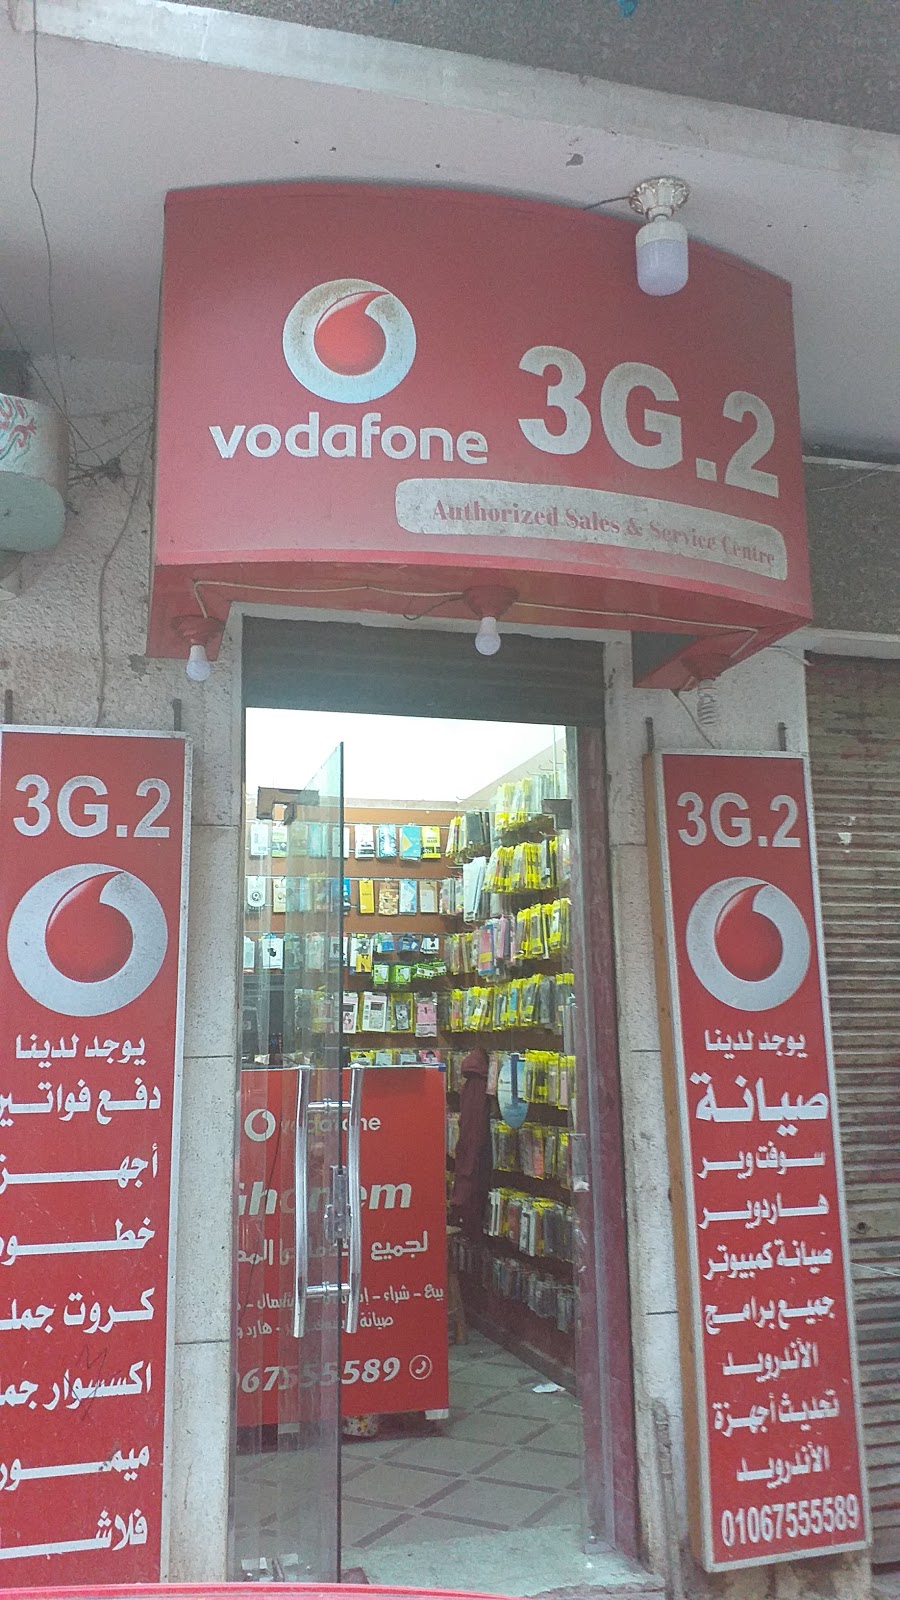 3G.2